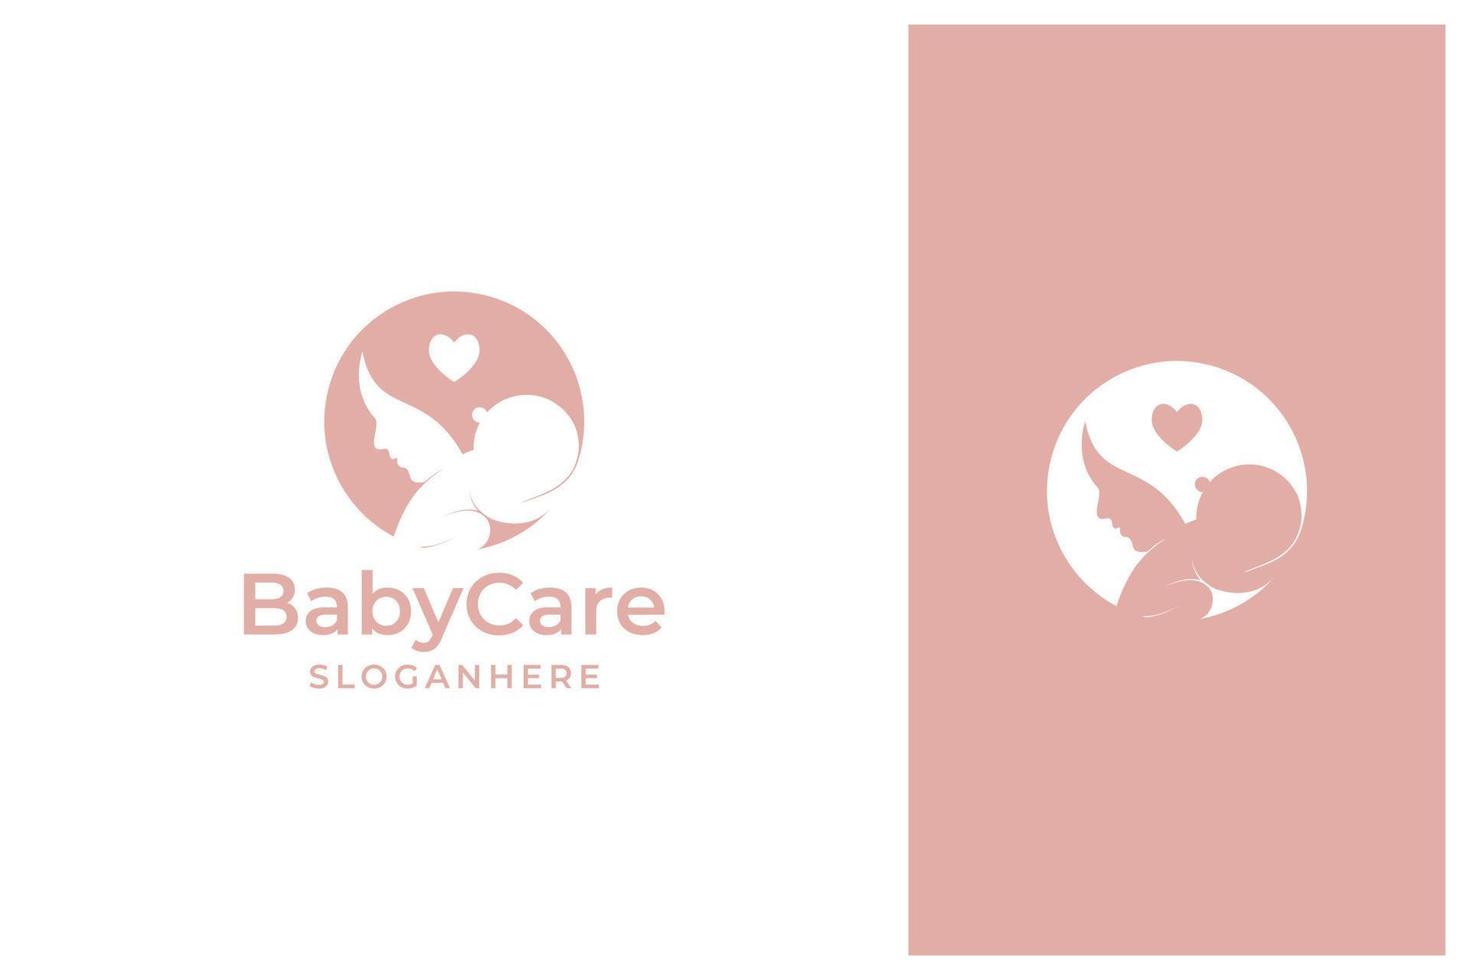 vetor de design de logotipo de mãe e bebê